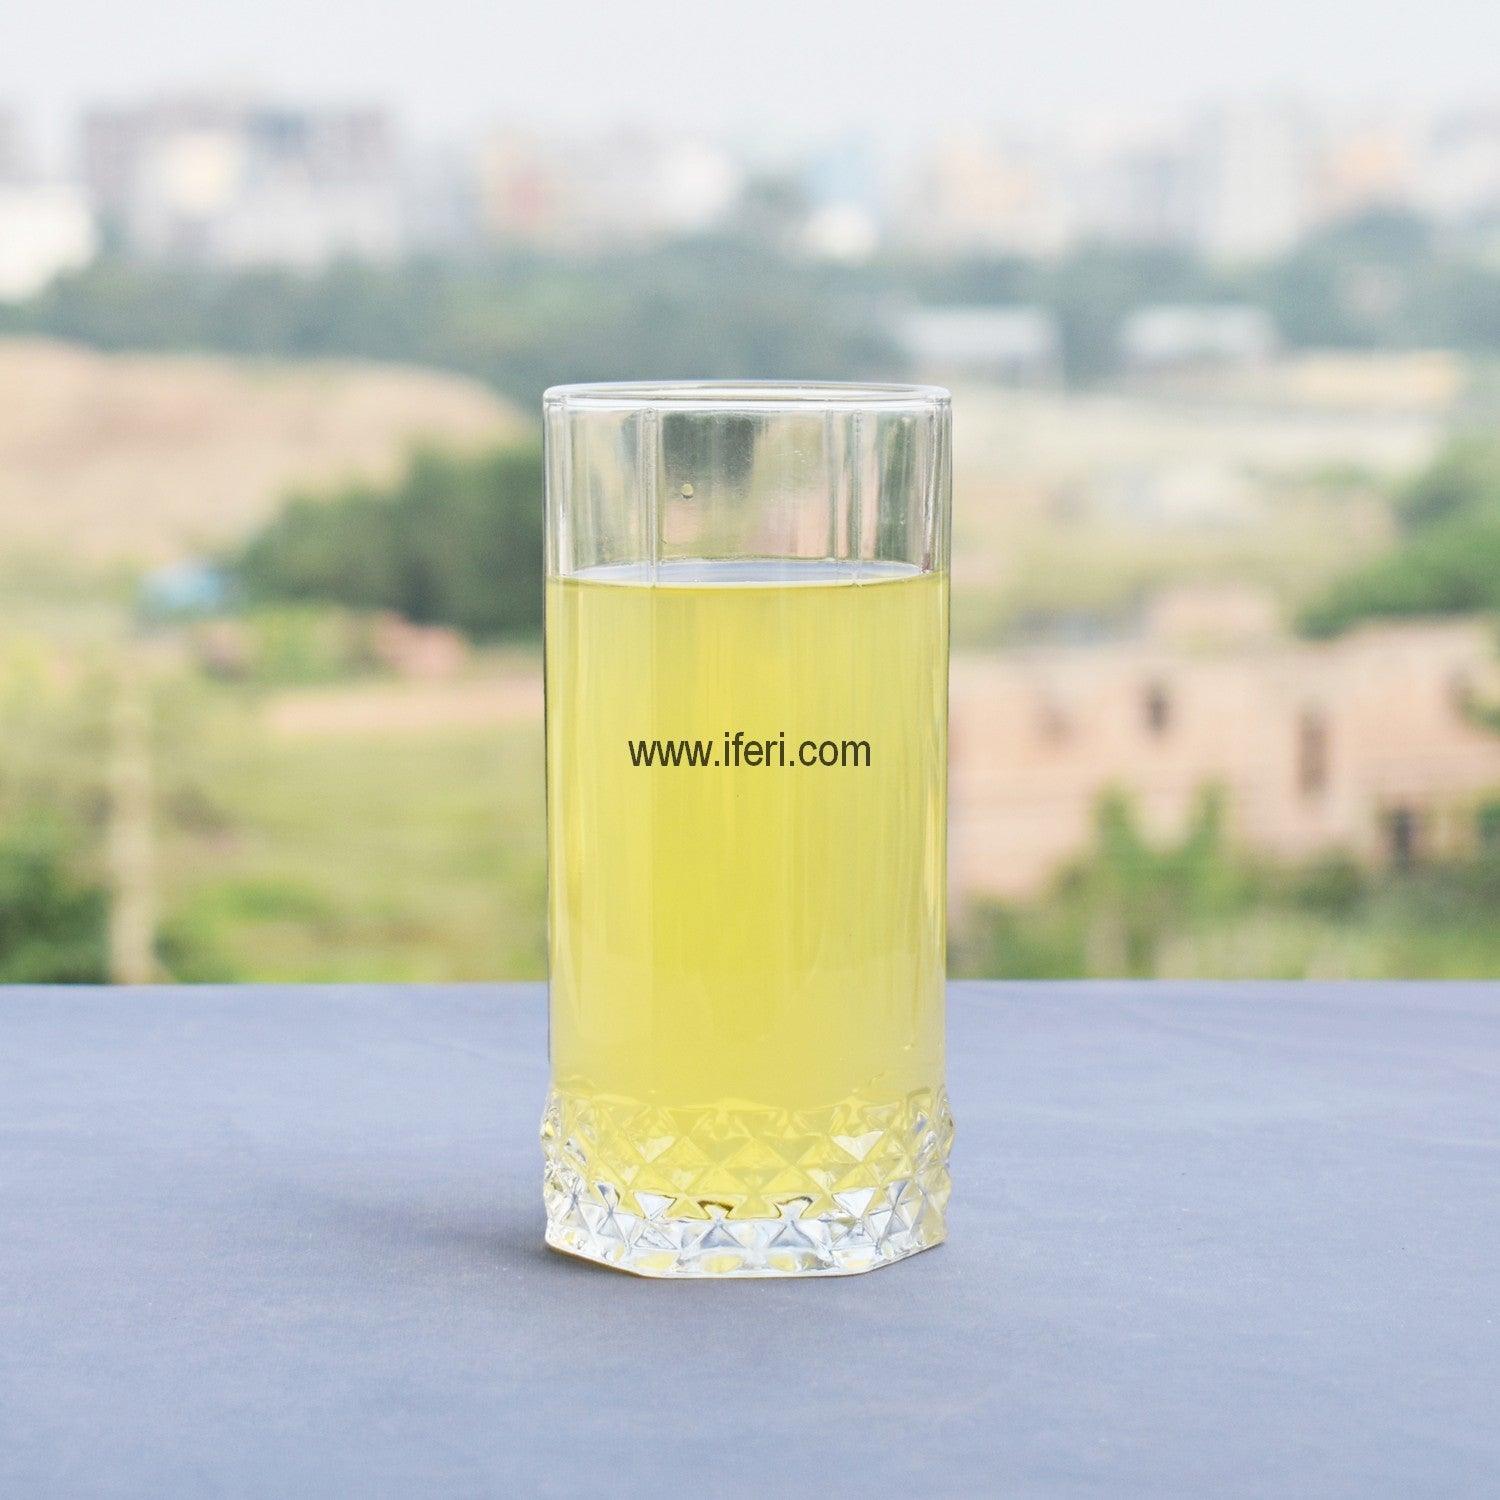 6 Pcs Water Juice Glass Set UT5501 Price in Bangladesh - iferi.com